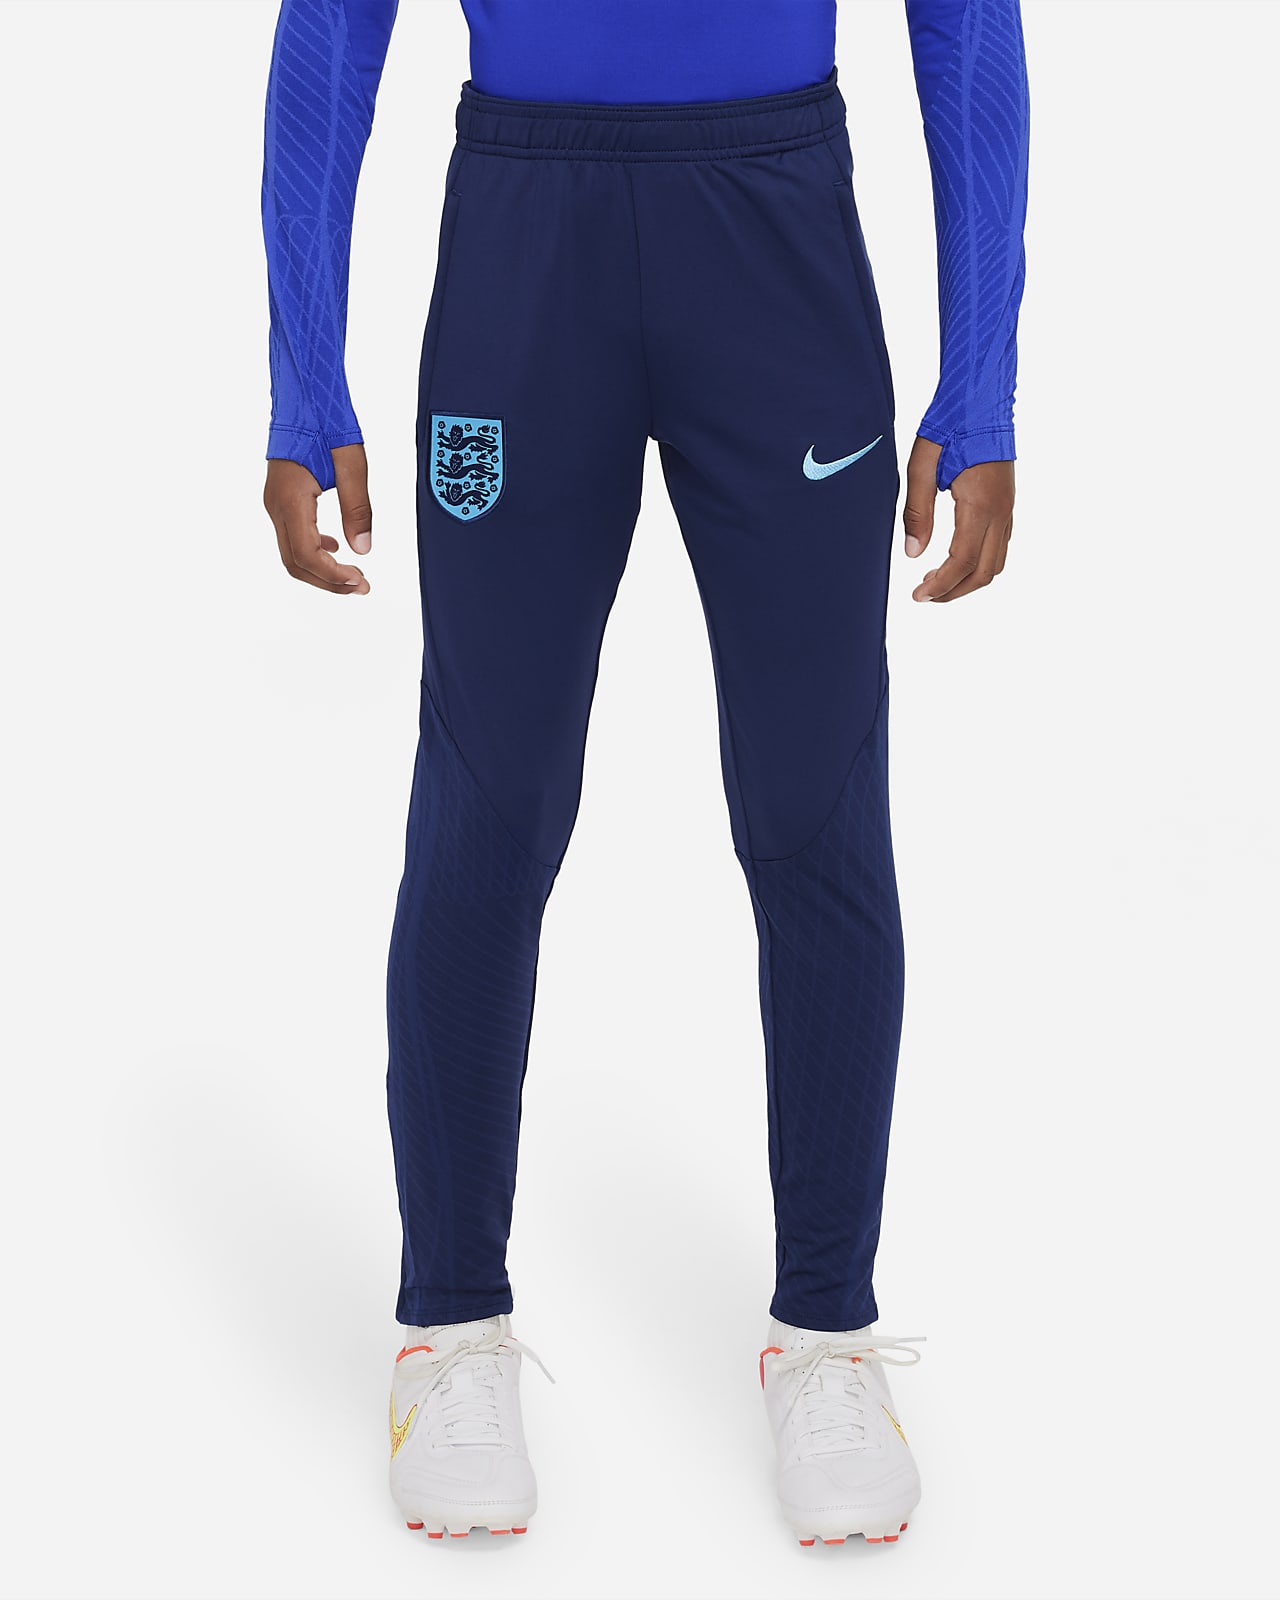 Buy Nike Air - Men's Sweatpants online | Foot Locker KSA